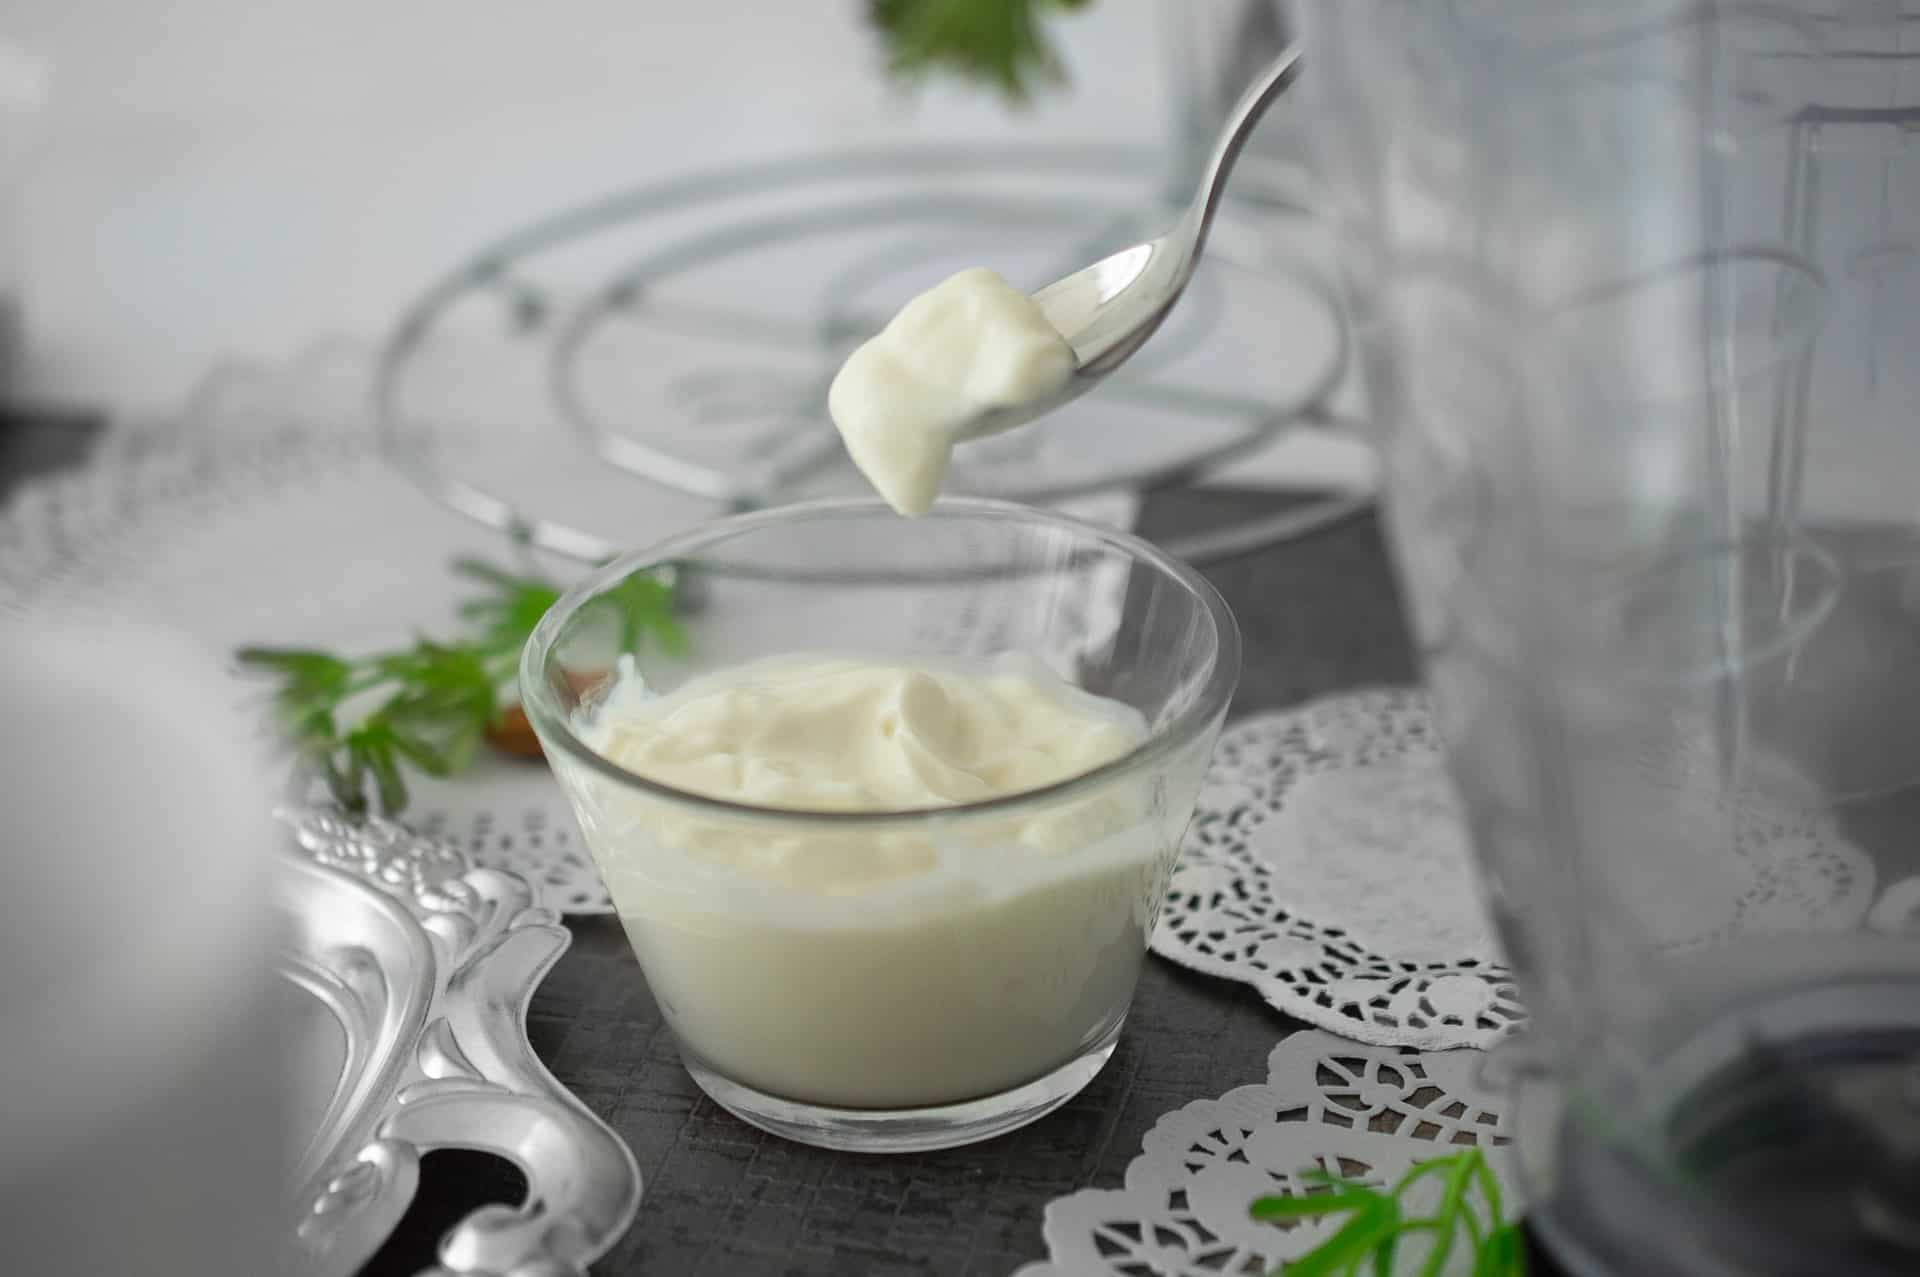 Cómo hacer yogurt casero paso a paso - Comedera - Recetas, tips y consejos  para comer mejor.